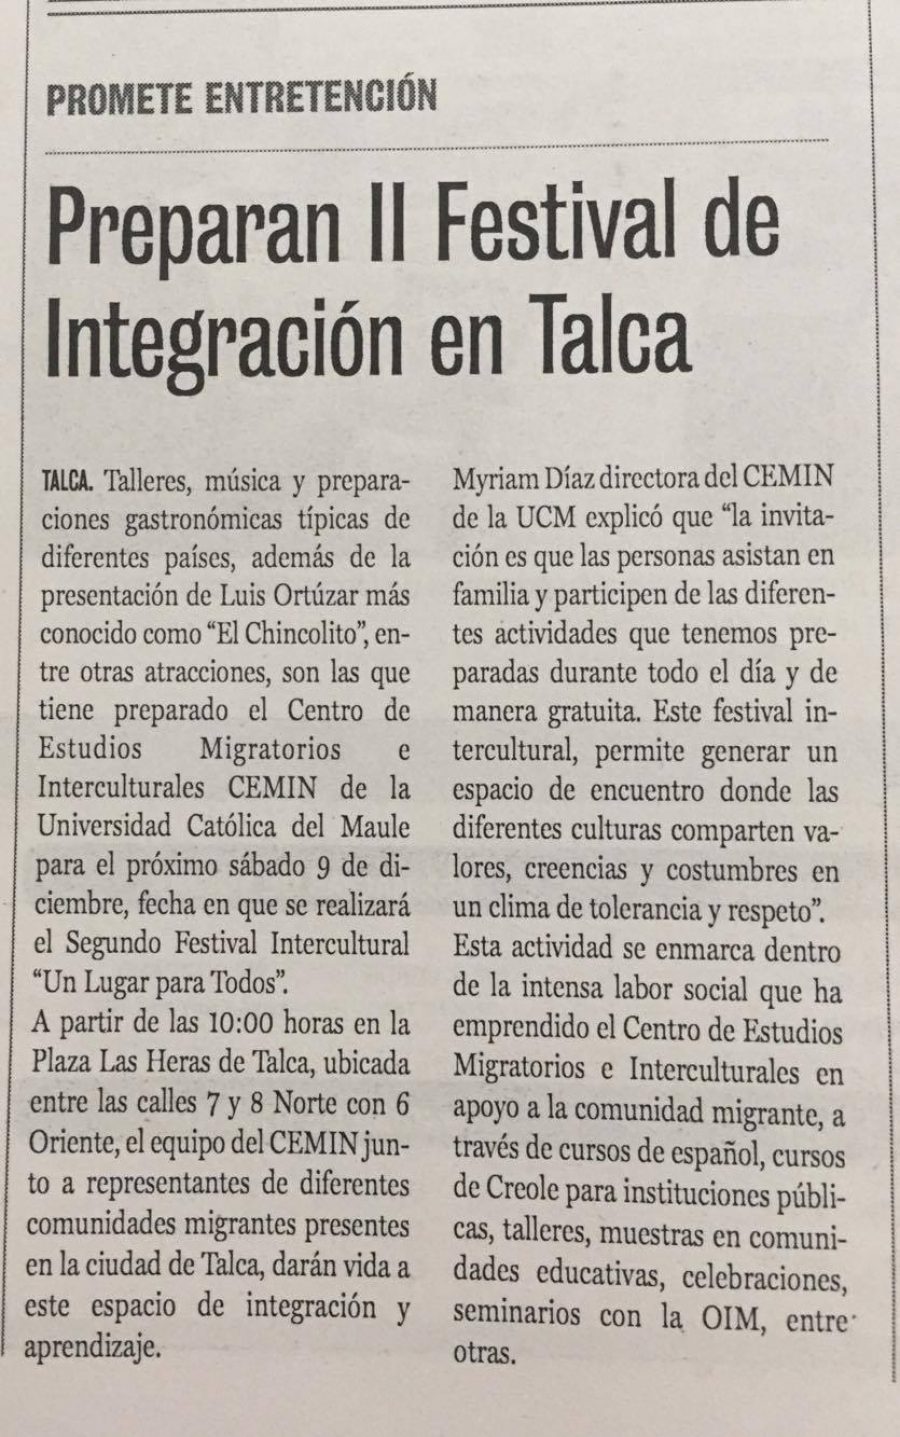 06 de diciembre en Diario La Prensa: “Preparan II Festival de Integración en Talca”